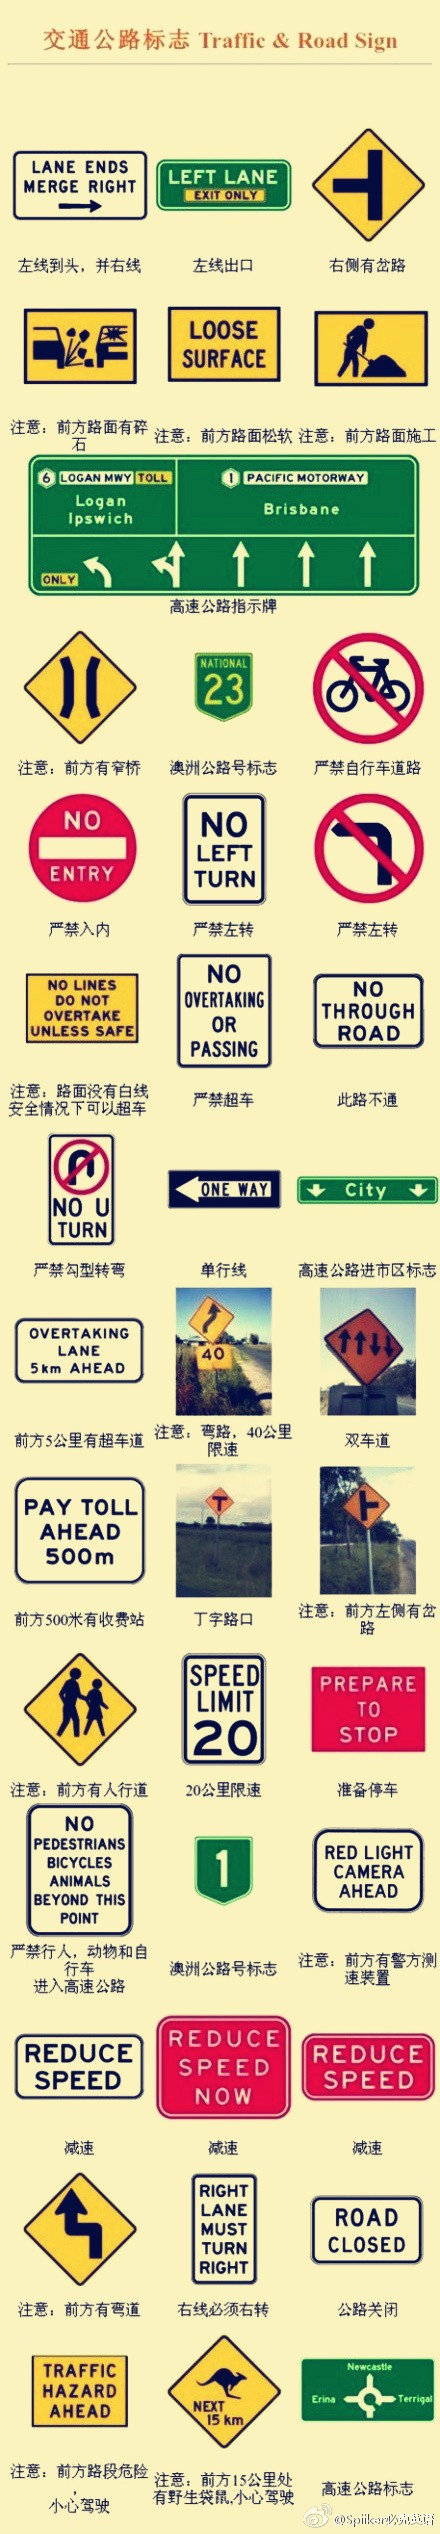 交通标志英文和中文图片